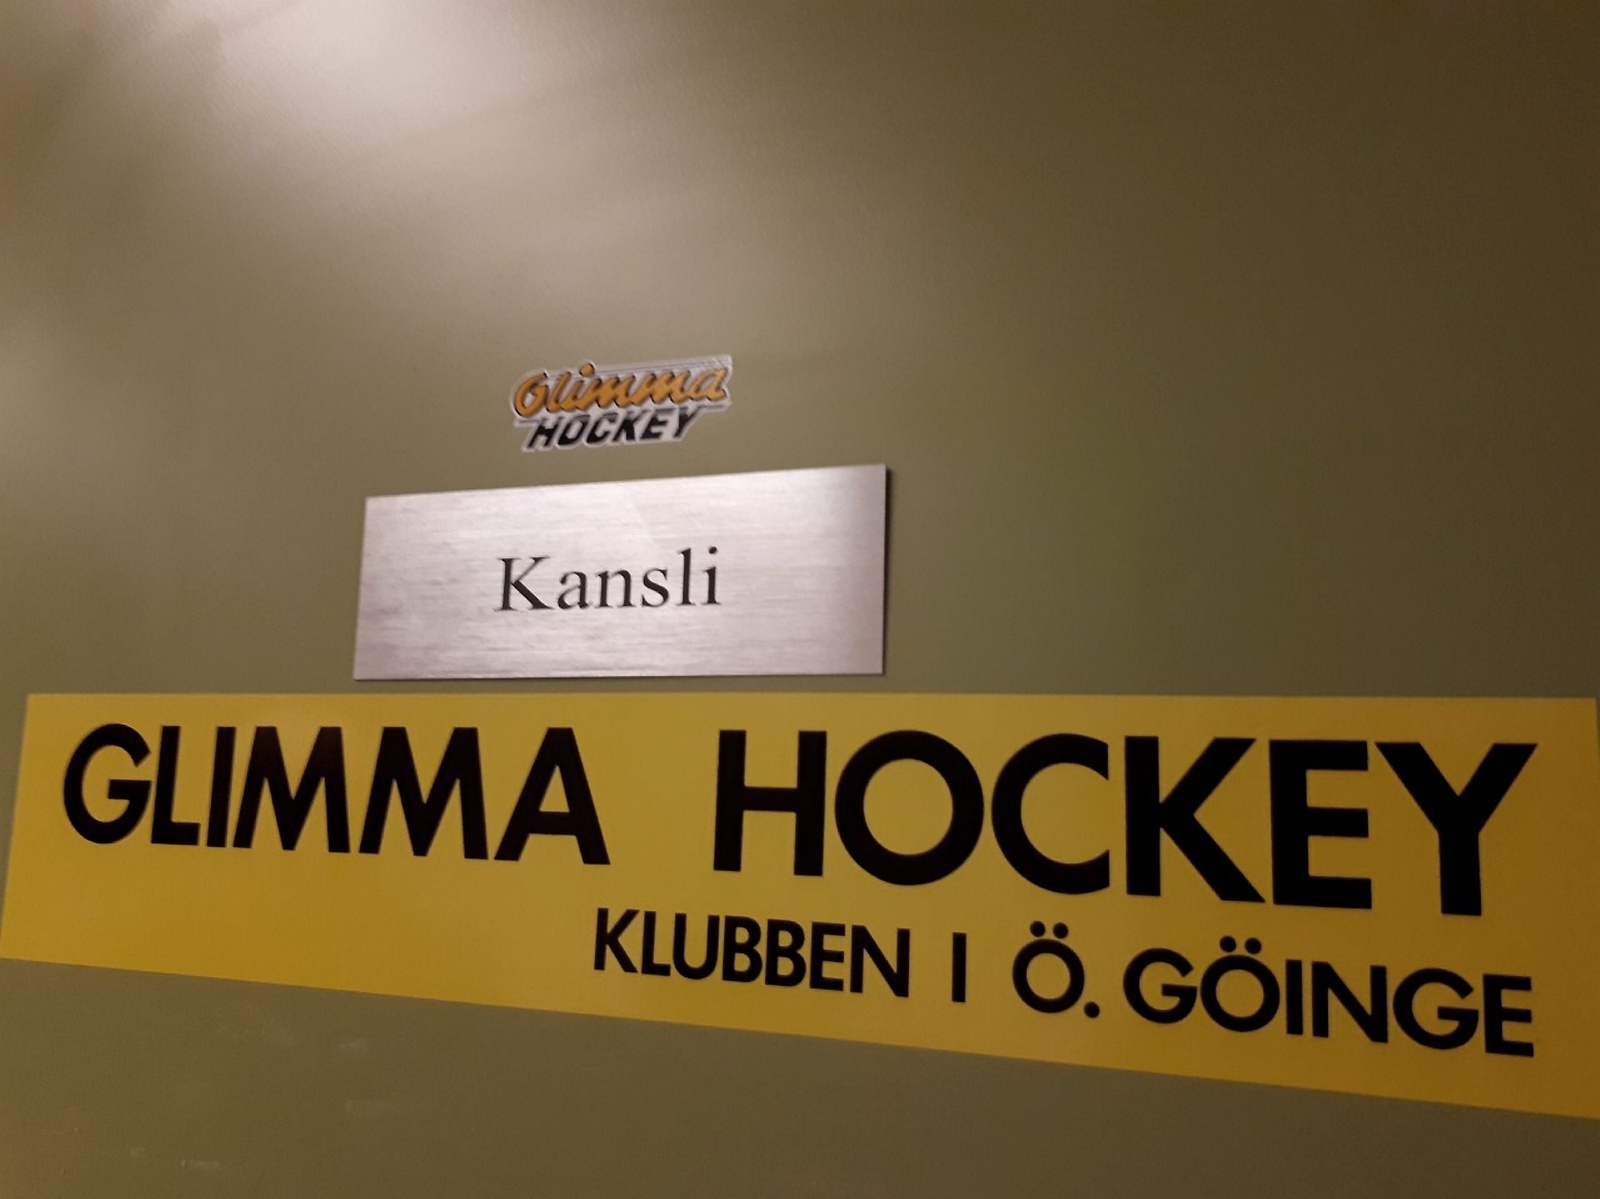 Glimma Hockeys kansli är som sig bör beläget i Trollahallen.
Foto: TOMAS GUSTAVSSON